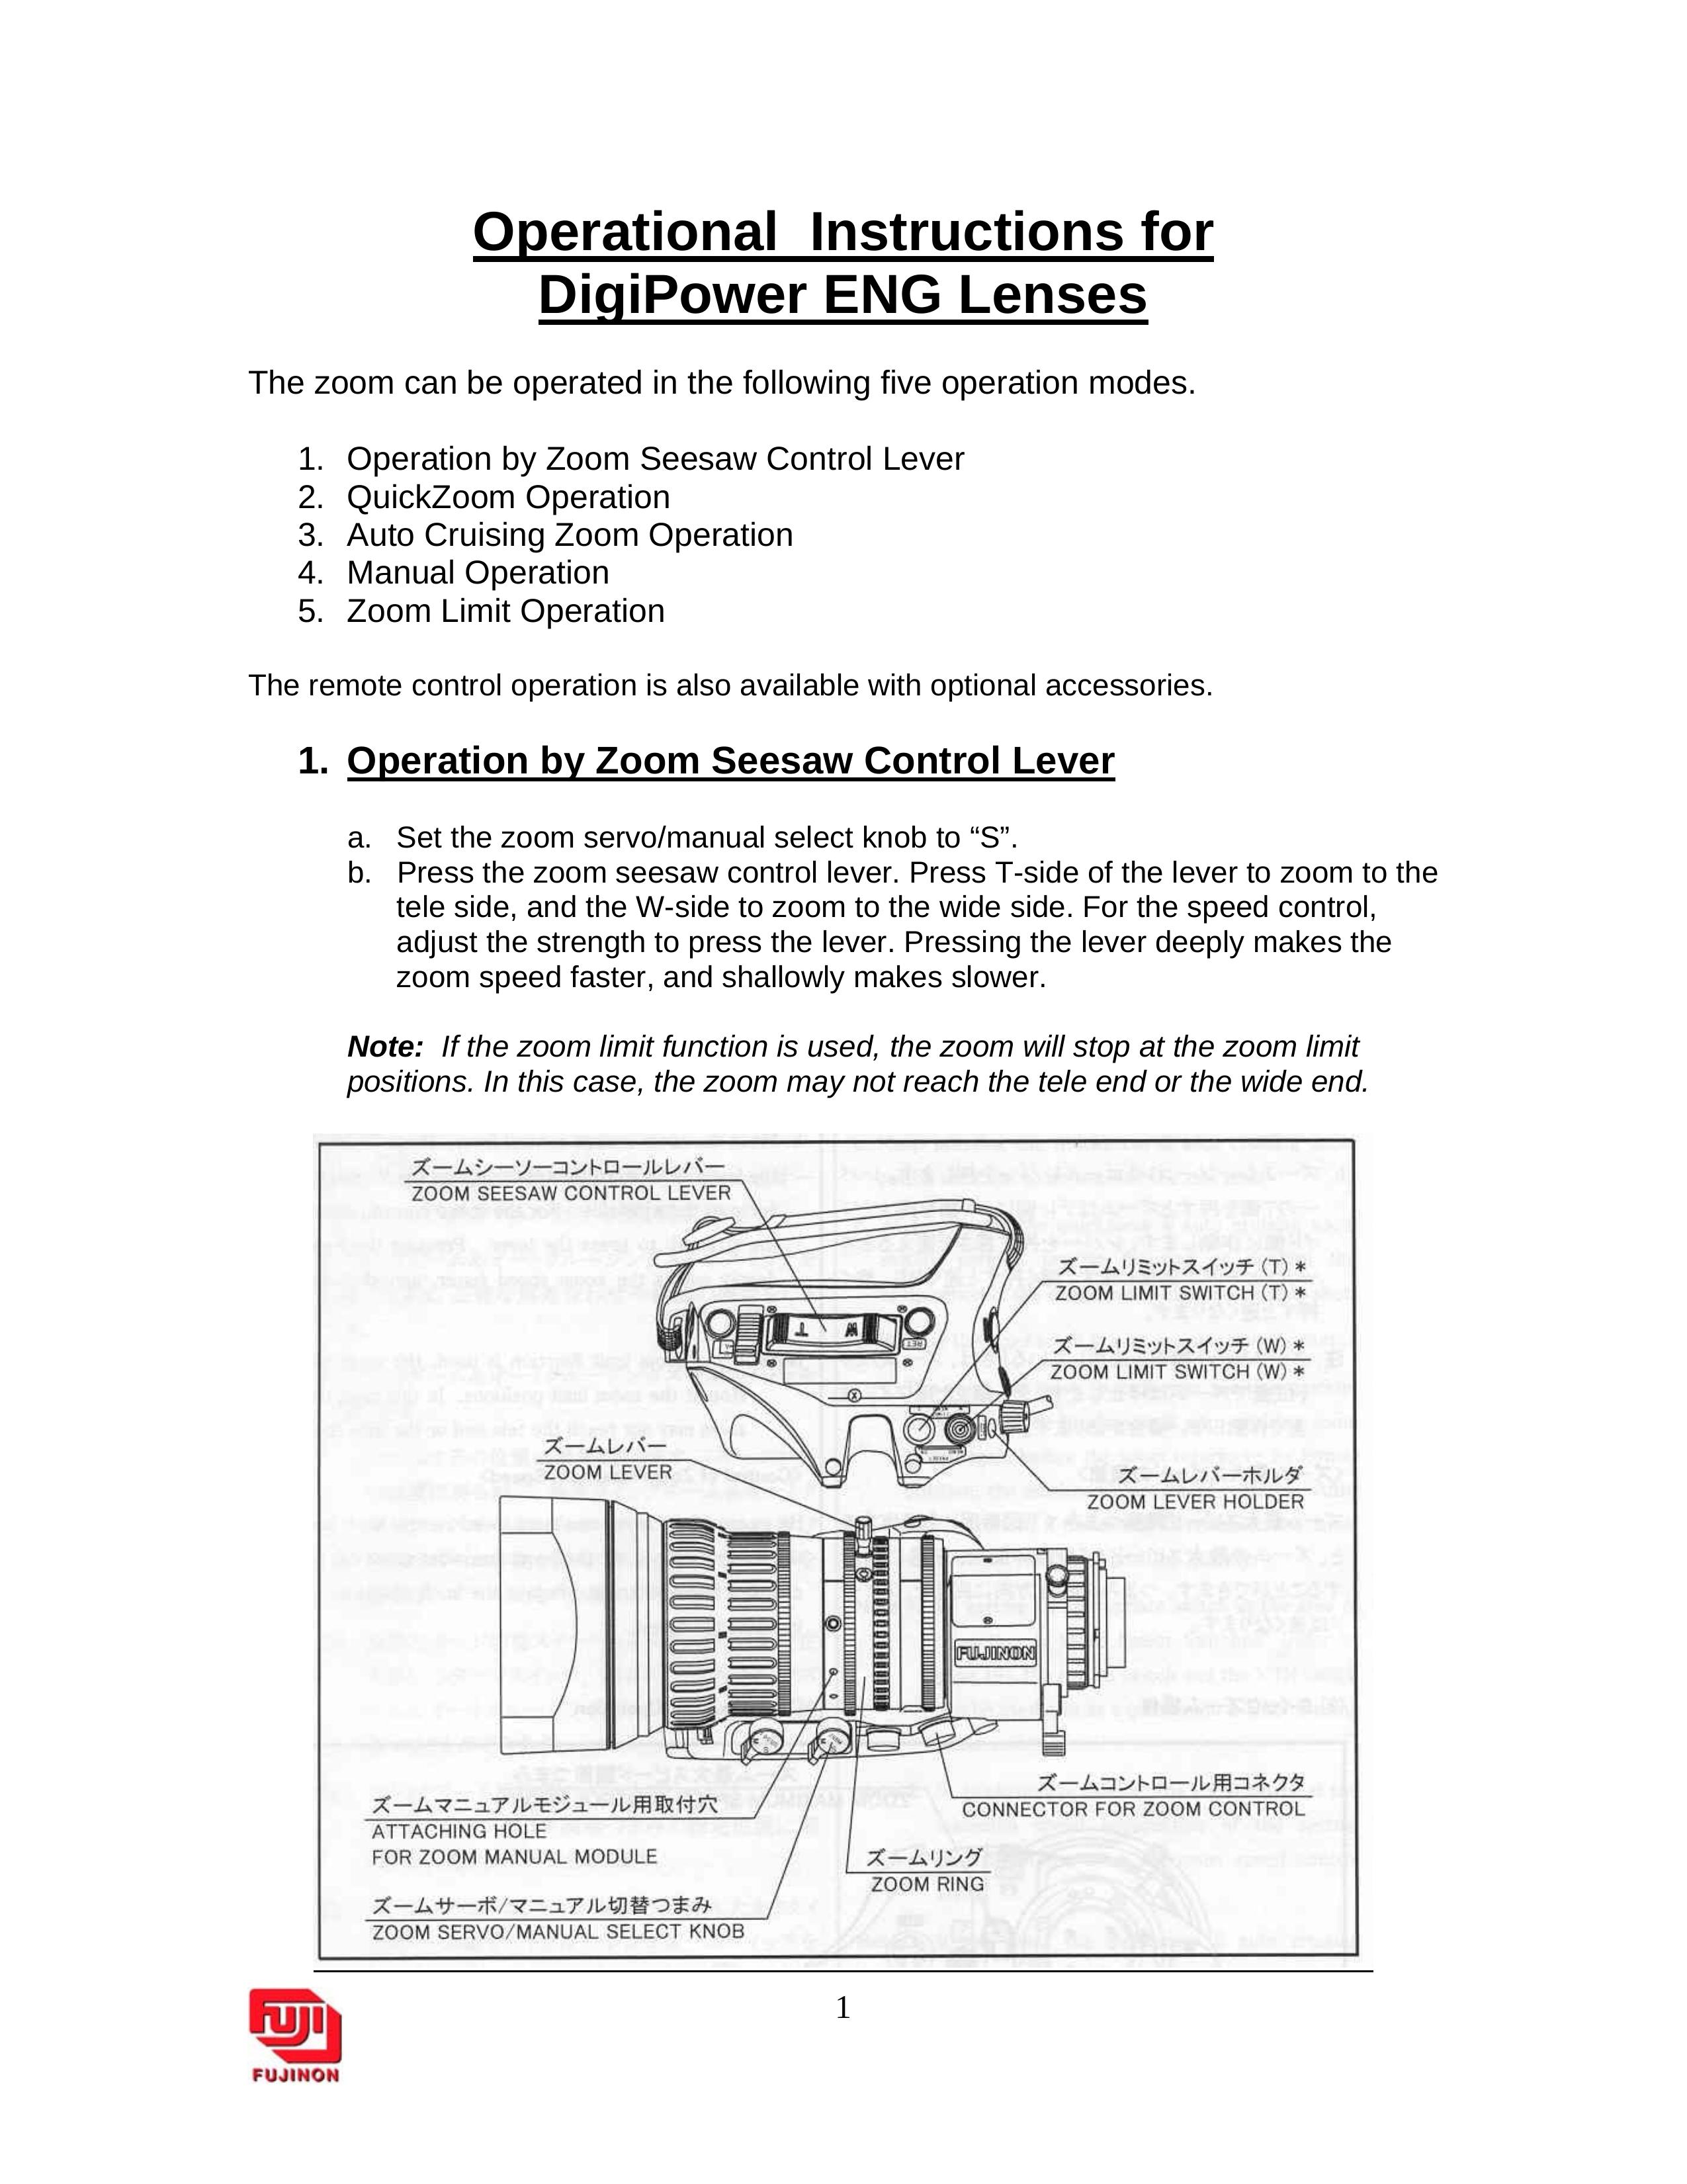 DigiPower ENG Lenses Camera Lens User Manual